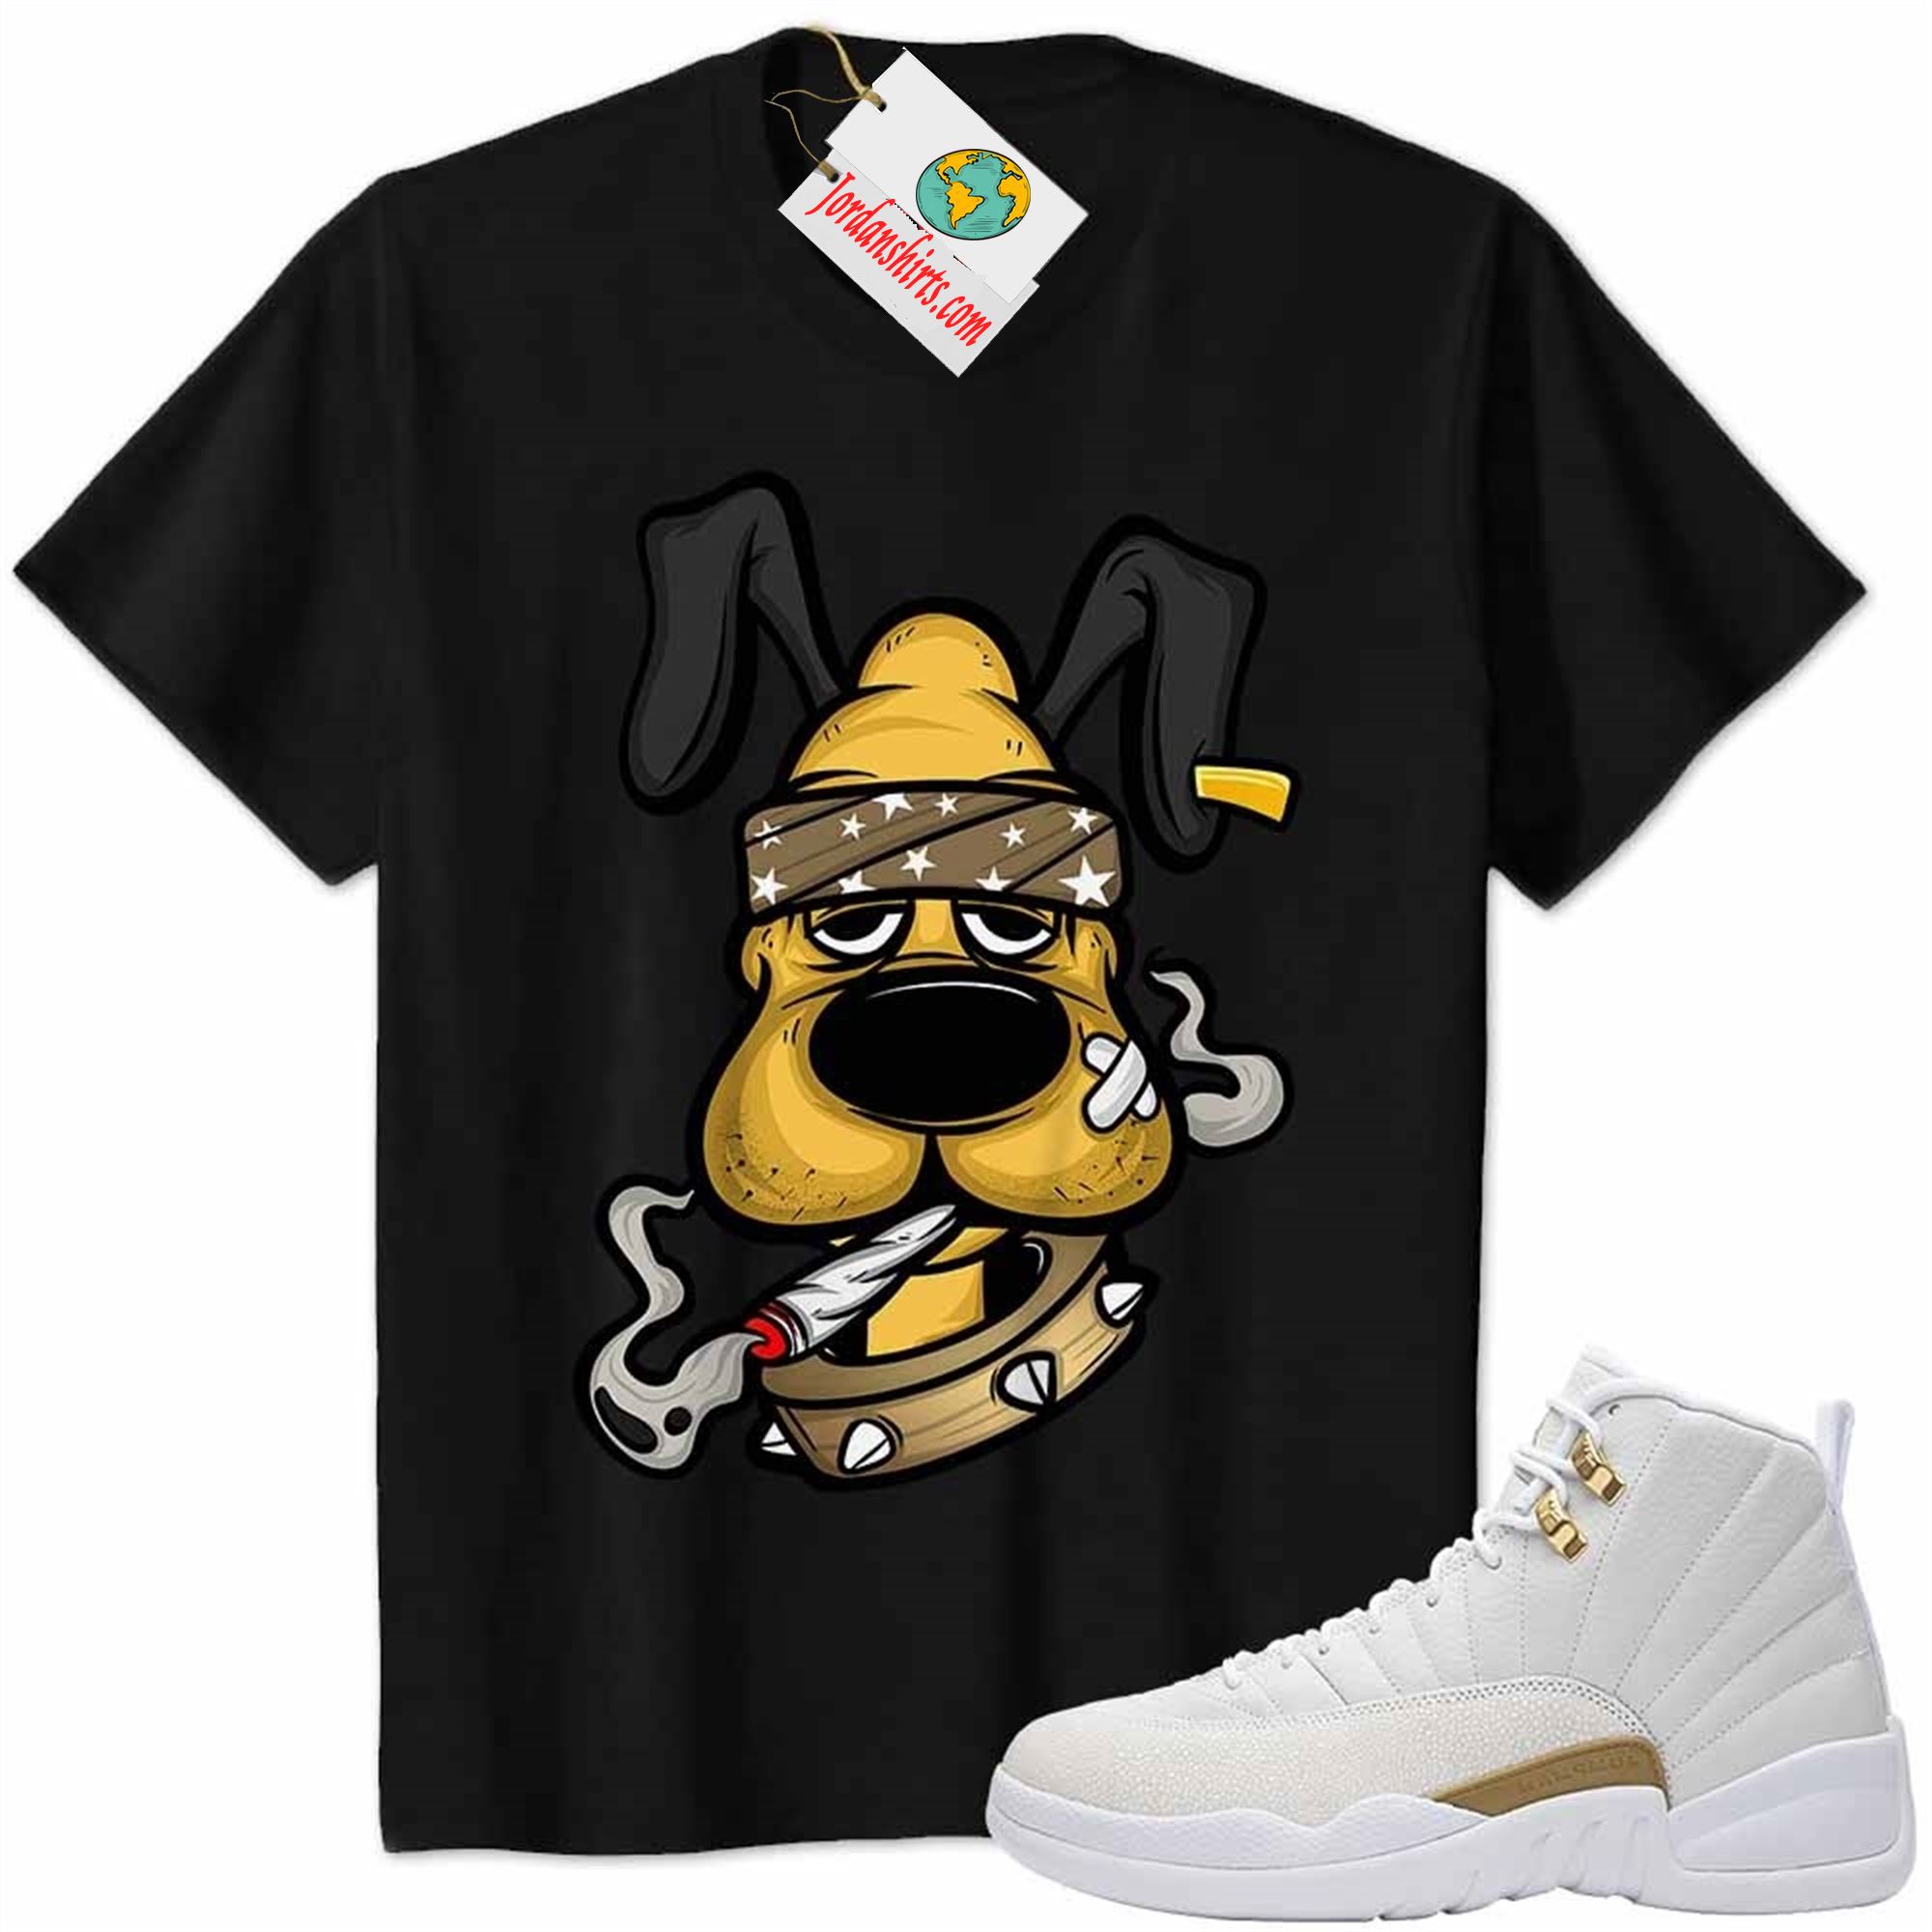 Jordan 12 Shirt, Gangster Pluto Smoke Weed Black Air Jordan 12 Ovo 12s Plus Size Up To 5xl